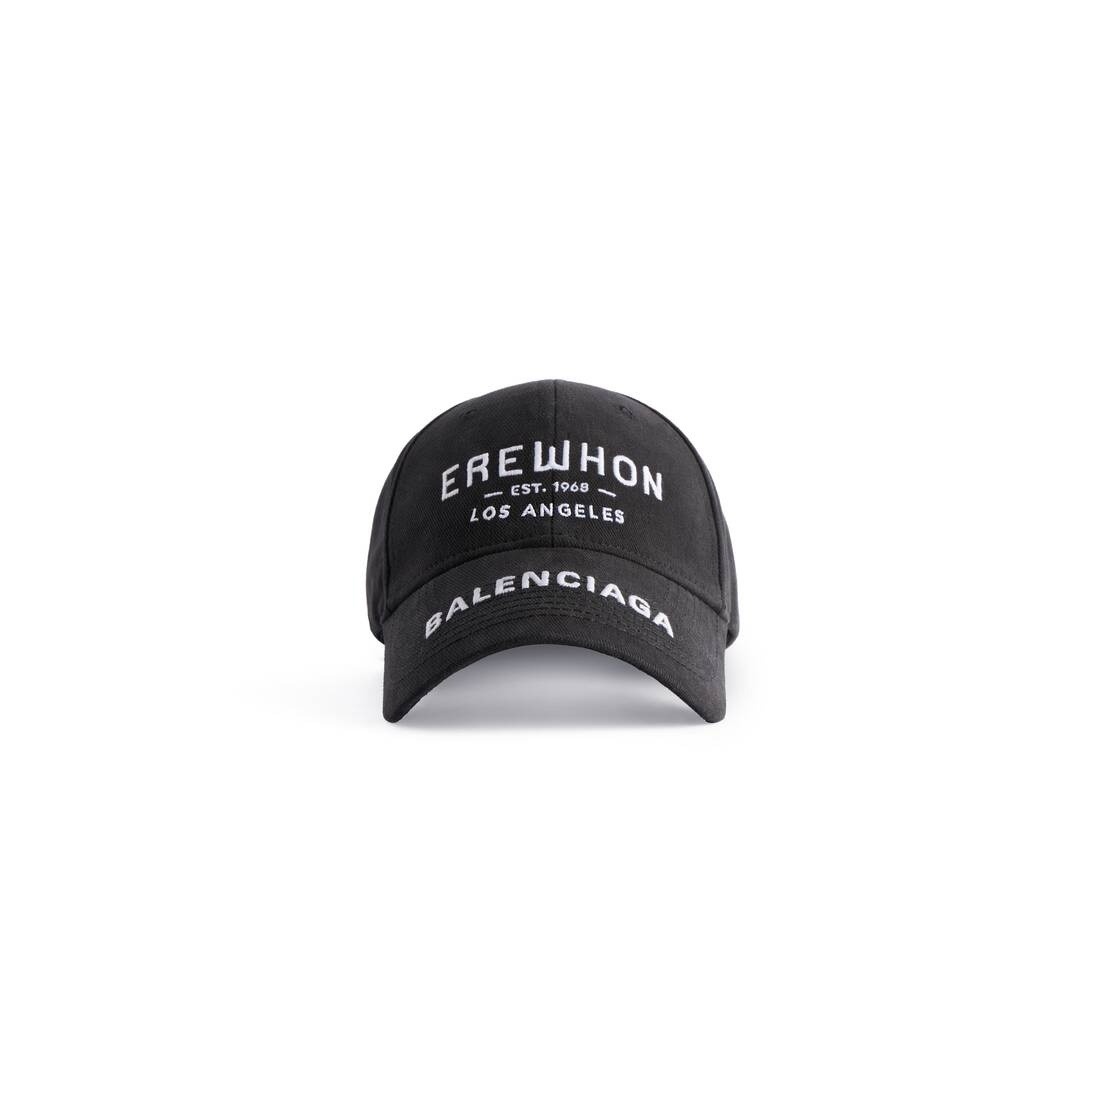 Erewhon® Los Angeles Cap in Black/white - 1